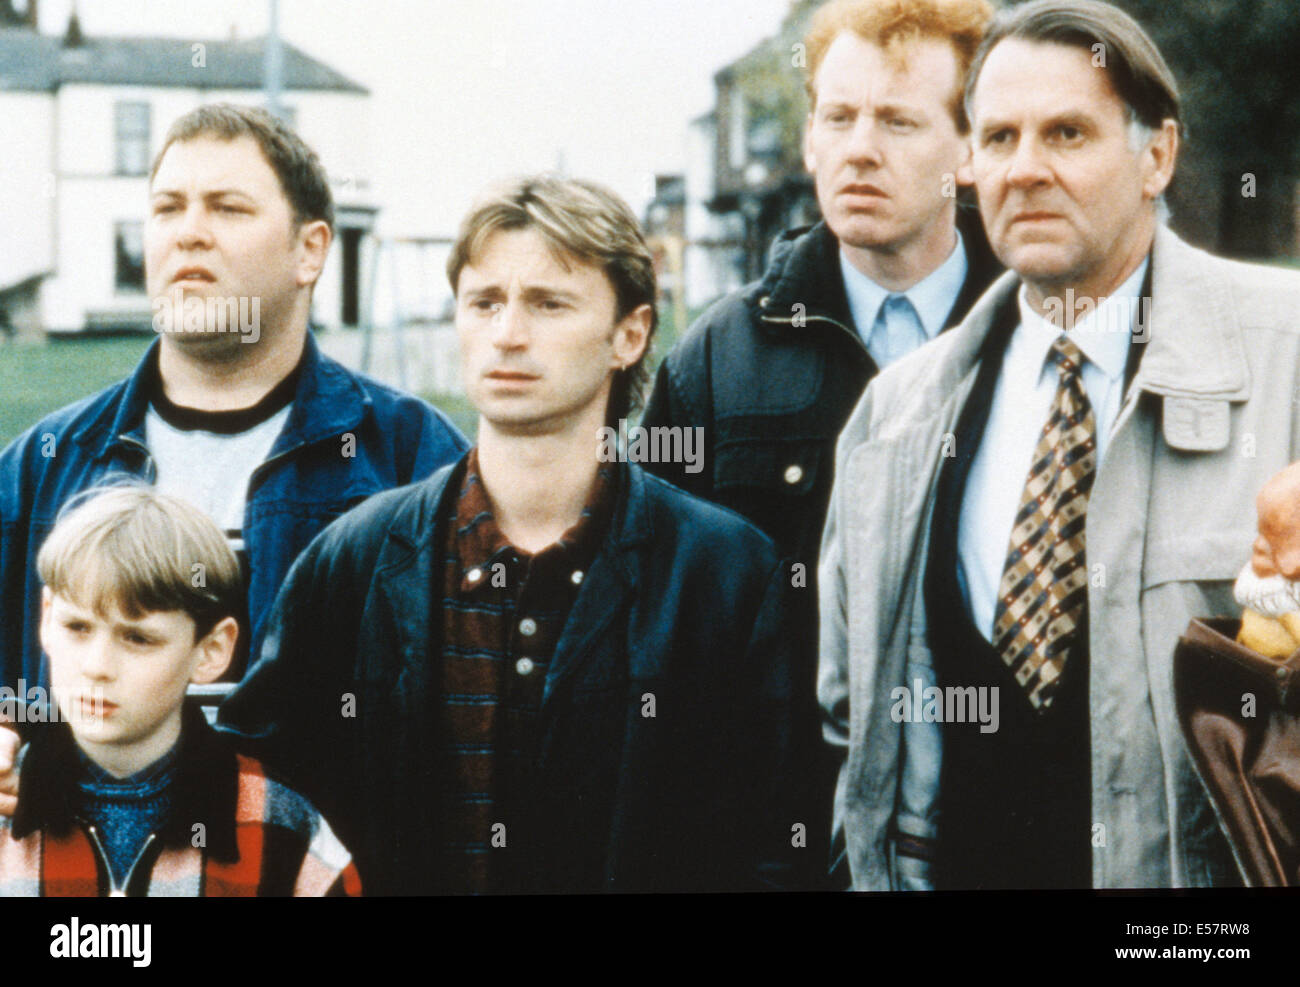 Il Monty pieno 1997 Fox Searchlight film con Robert Carlyle (centrale) come Gaz Foto Stock